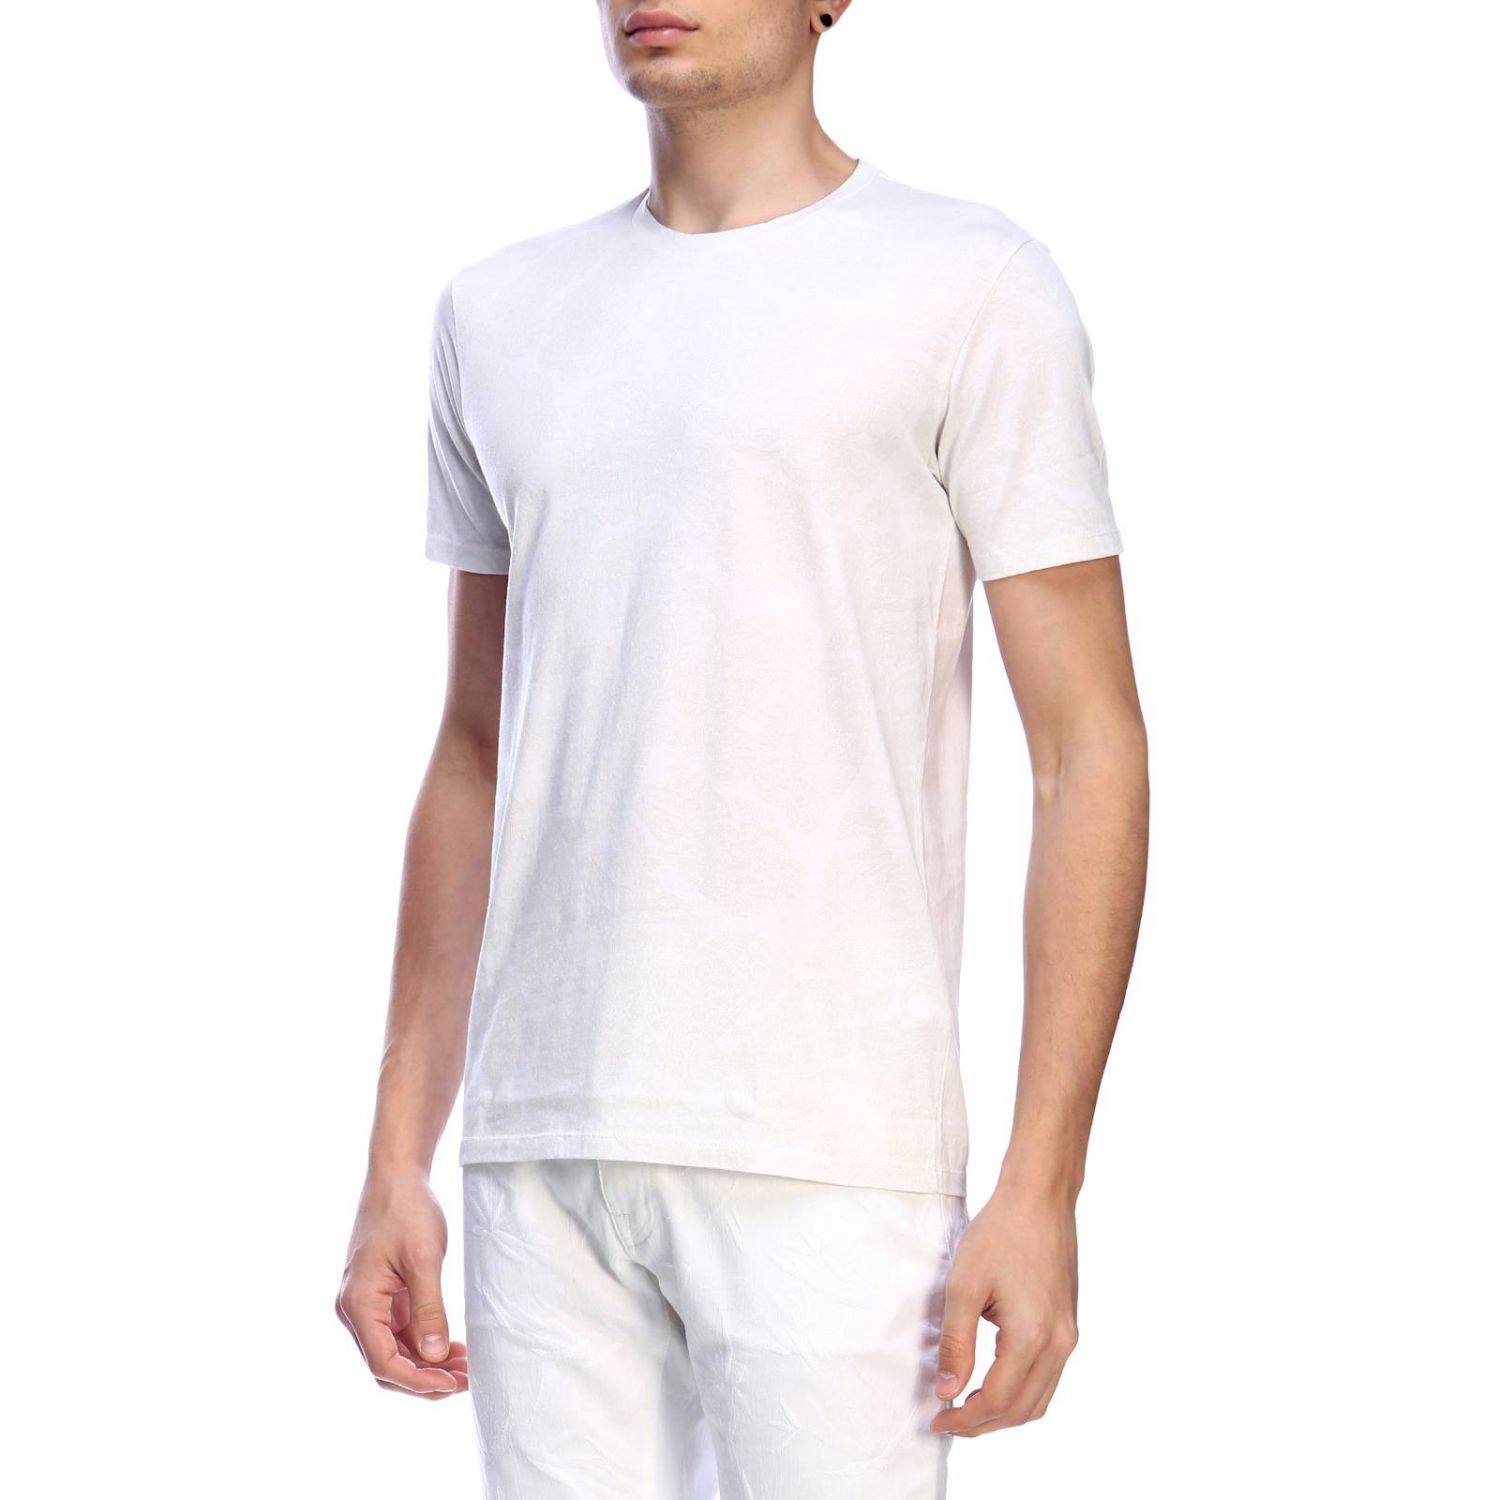 T-shirt Etro: T-shirt homme Etro blanc 2